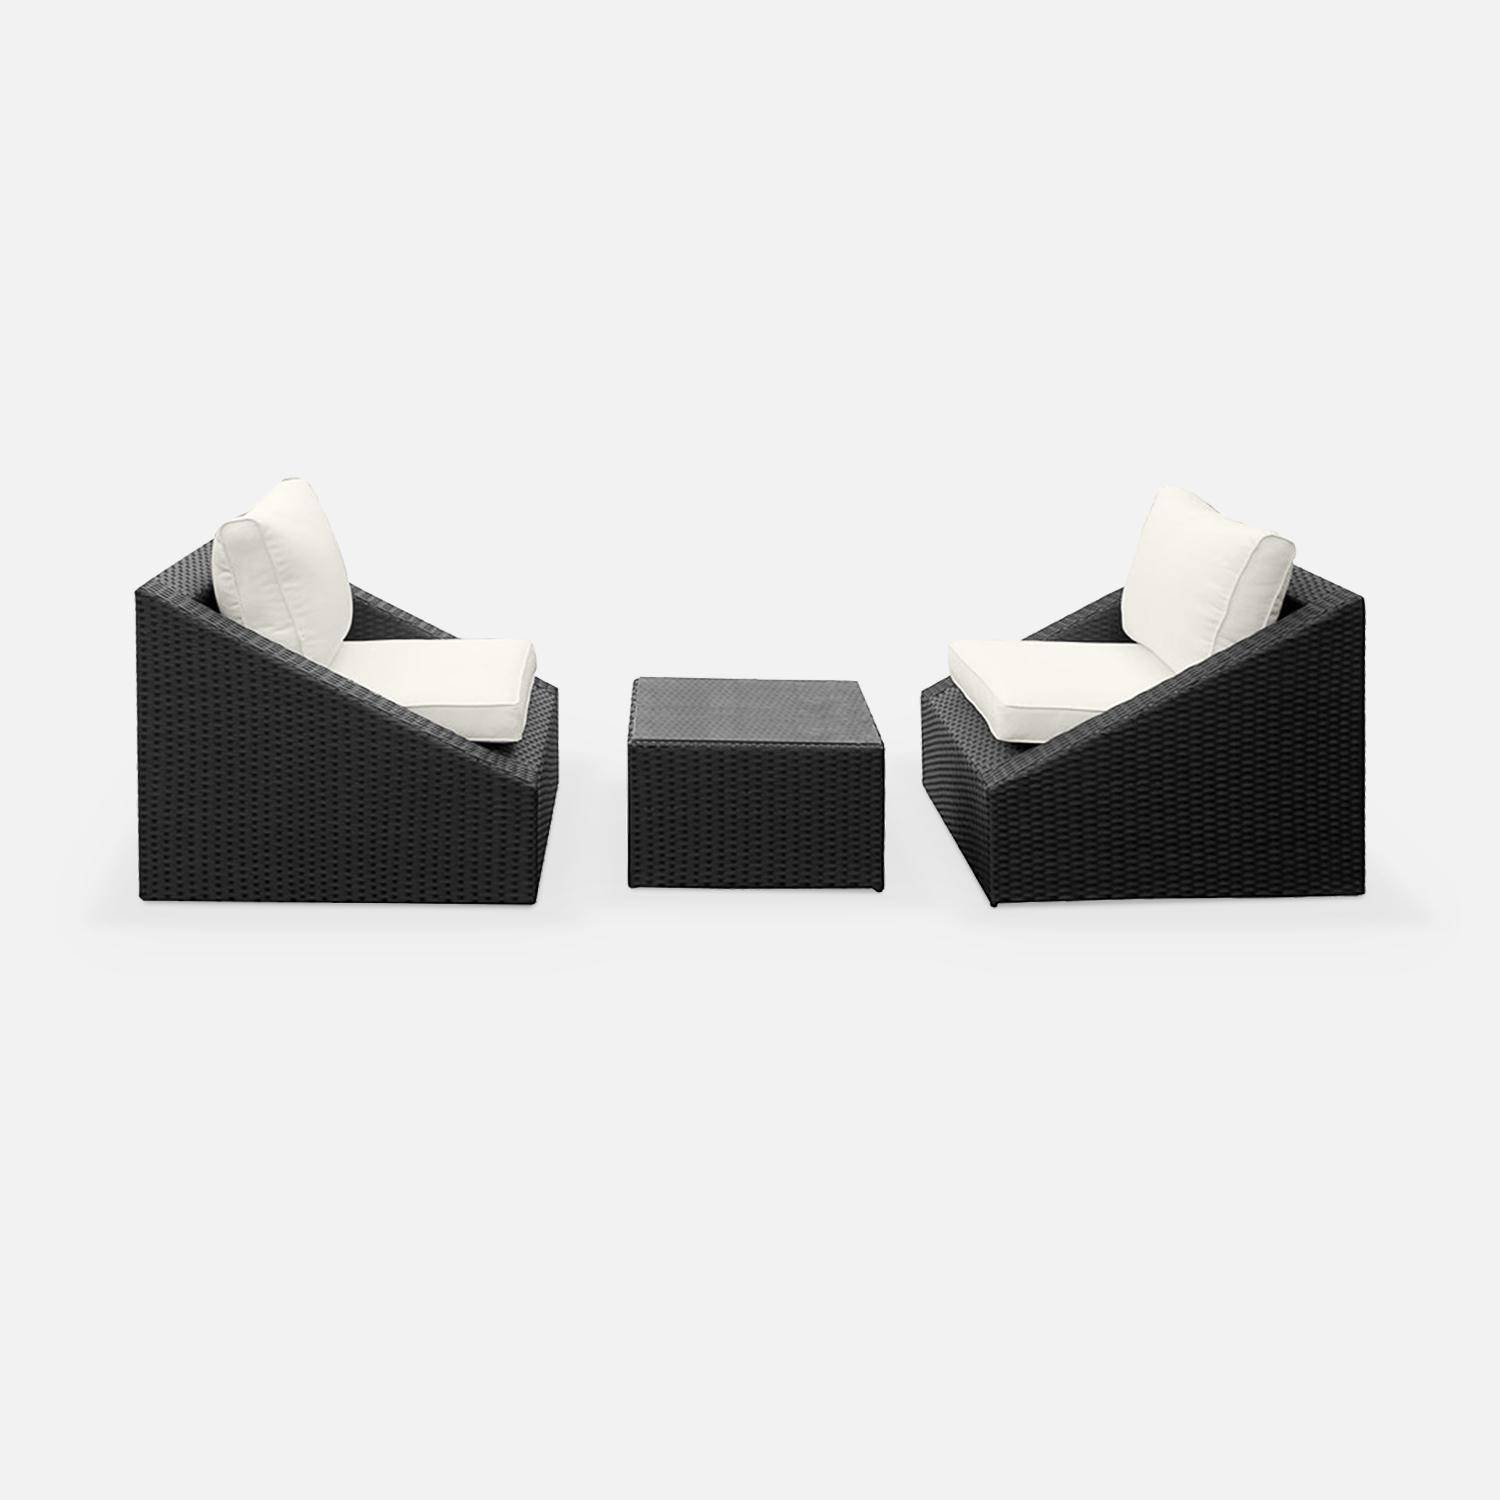 Sitzgarnitur für den Garten 2 Sitze - Triangolo - schwarzes Kunststoffrattan, ecrufarbene Kissen, Stühle + 1 Couchtisch, stapelbar Photo3